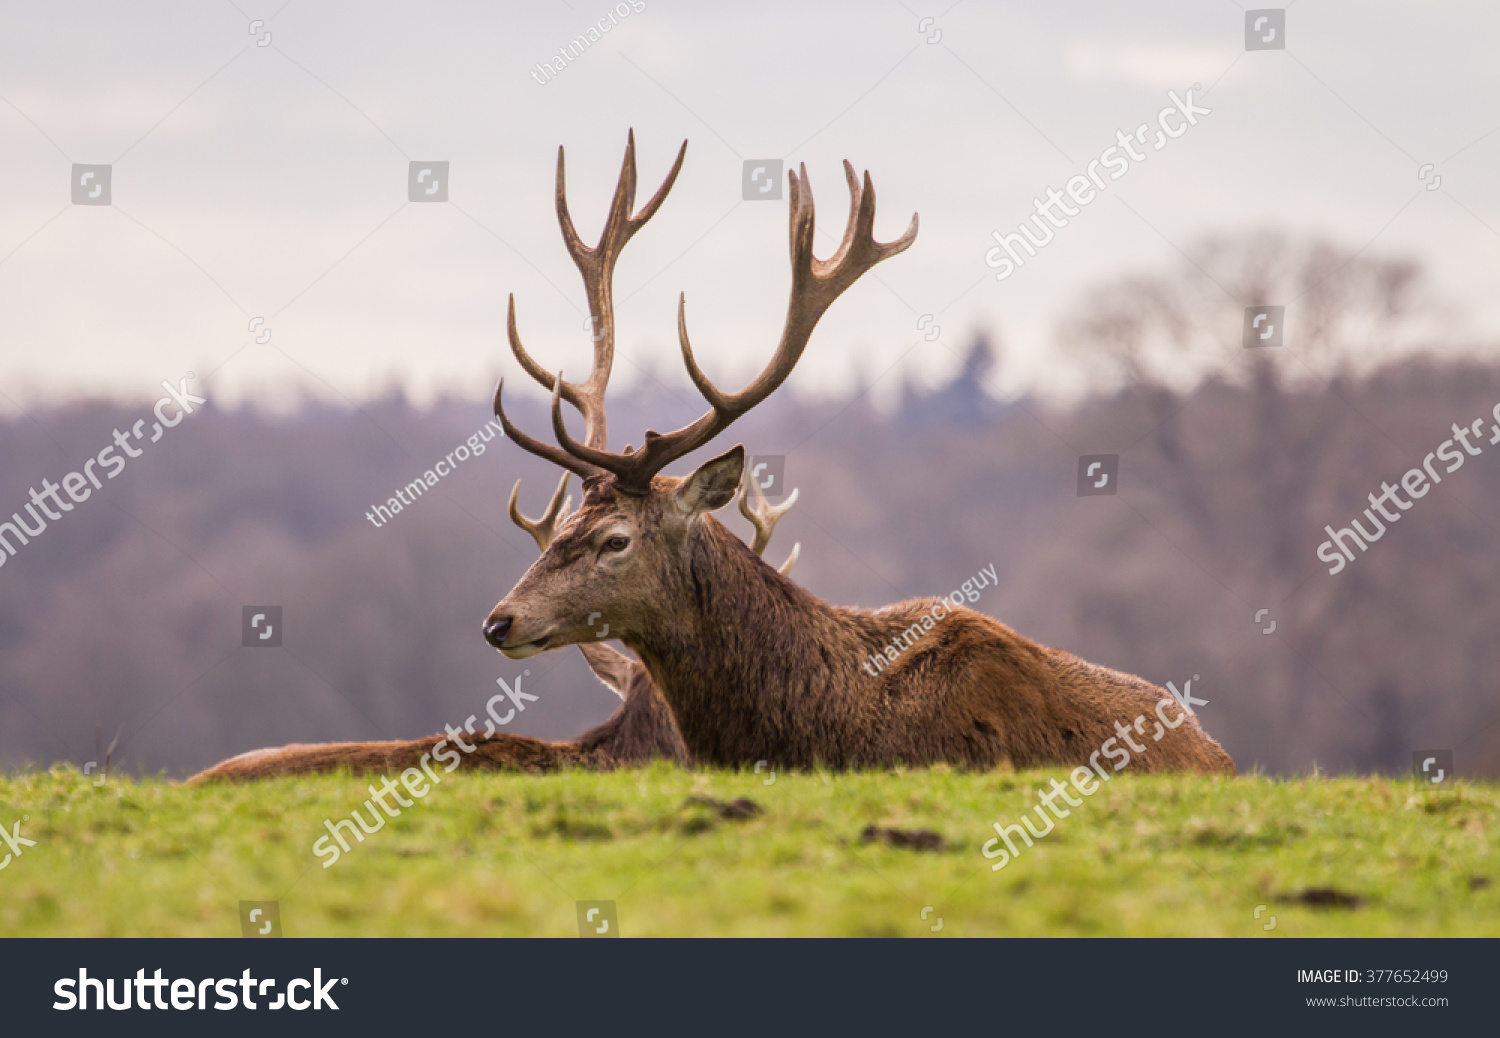 A herd of Red Deer (Cervus elaphus) stags relaxing in a deer park. #377652499